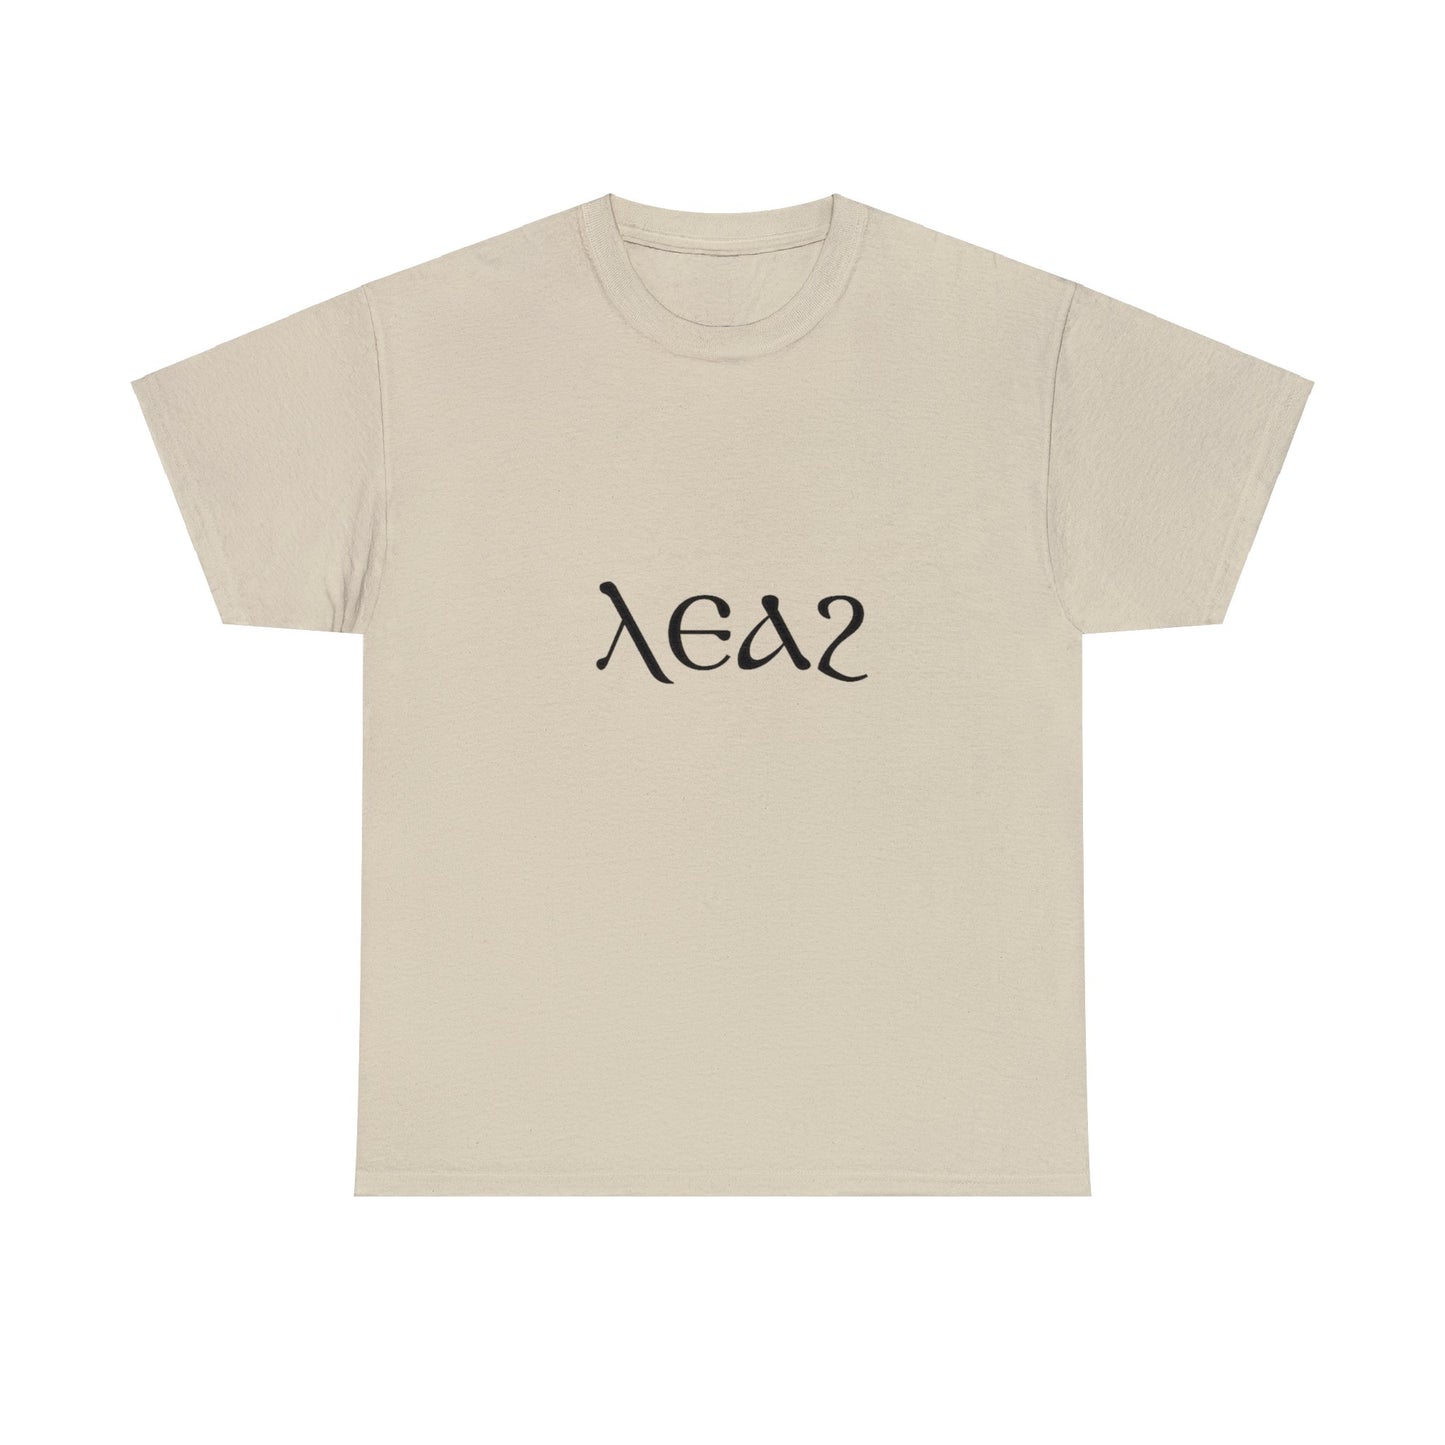 Leah T-shirt